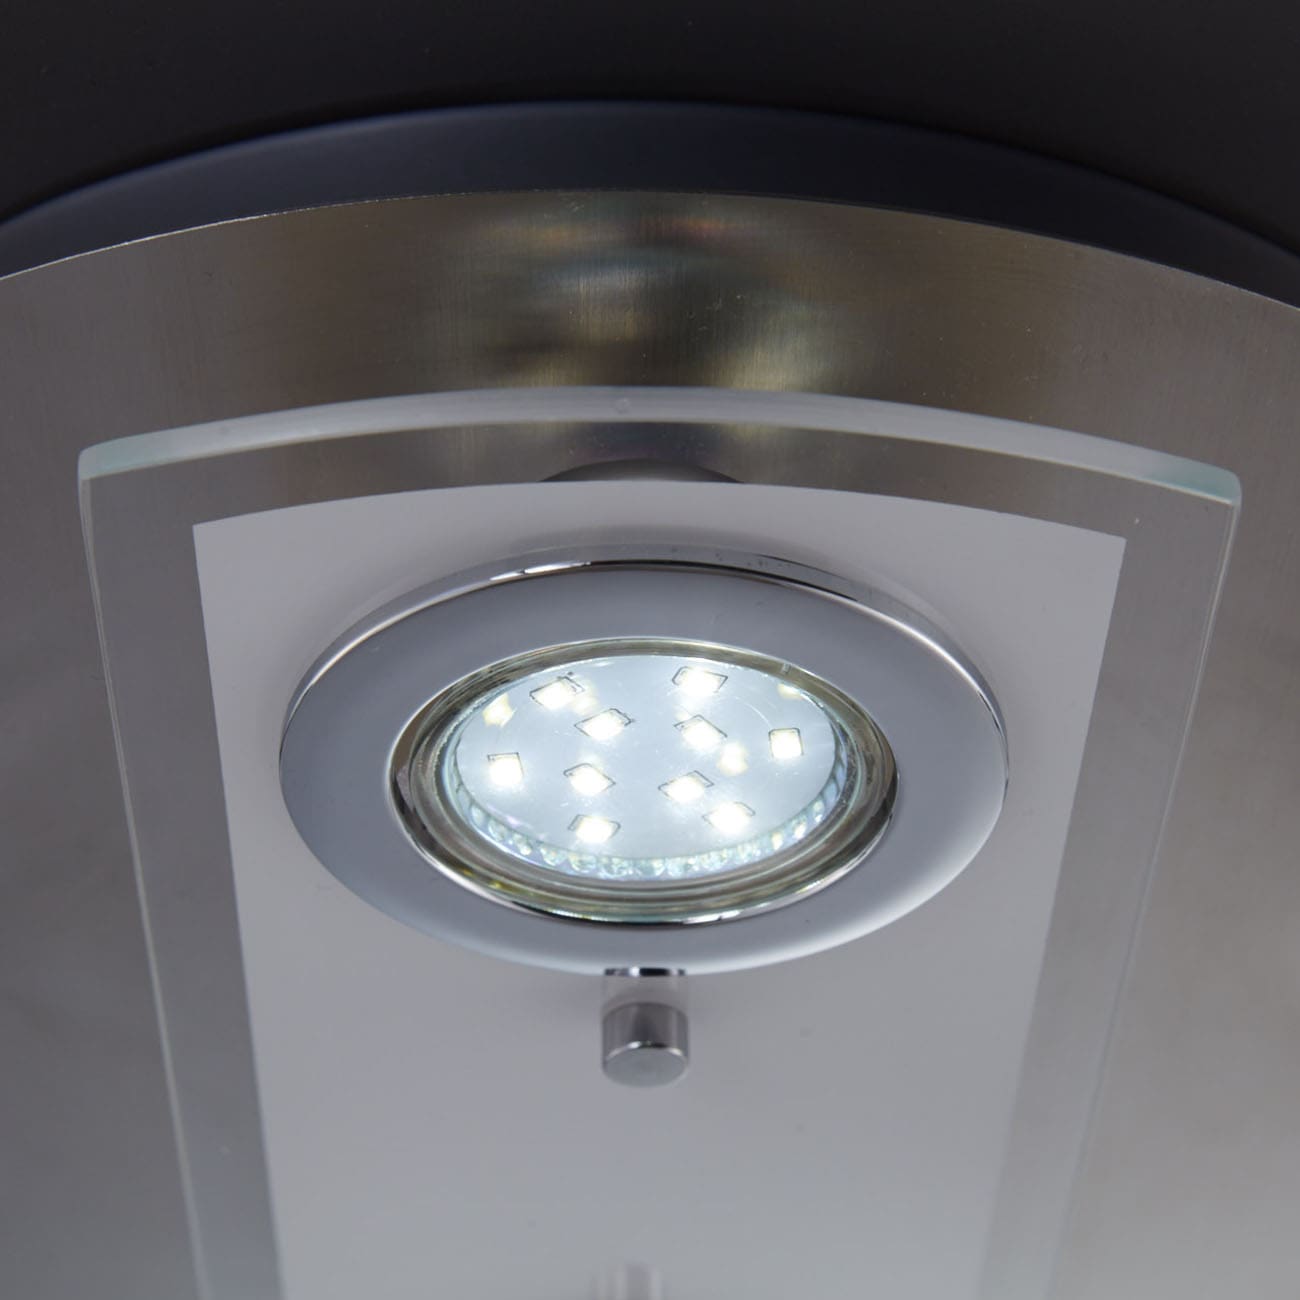 LED Deckenleuchte 29cm - 4-flammig - moderne Deckenlampe 2 Spots schwenkbar Glas Metall GU10 12W 1000lm warmweiß | Matt-Nickel - 6